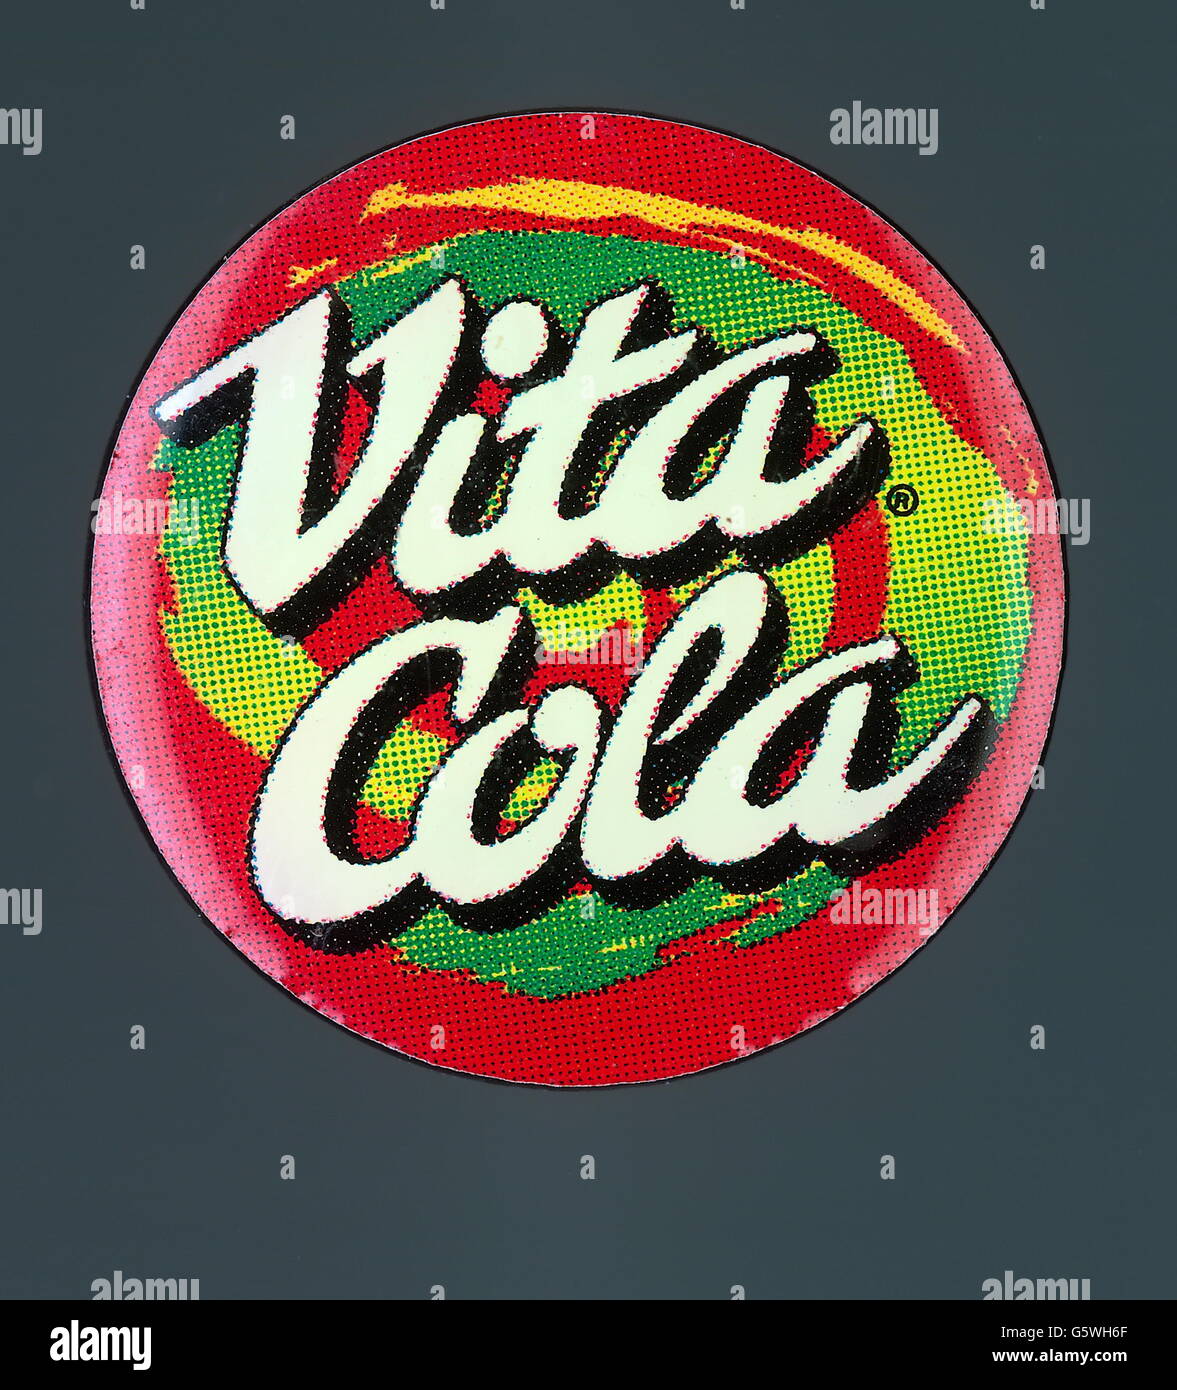 Publicité, boissons, Coca Cola, 'Vita Cola', sticker, 20e siècle, droits supplémentaires-Clearences-non disponible Banque D'Images